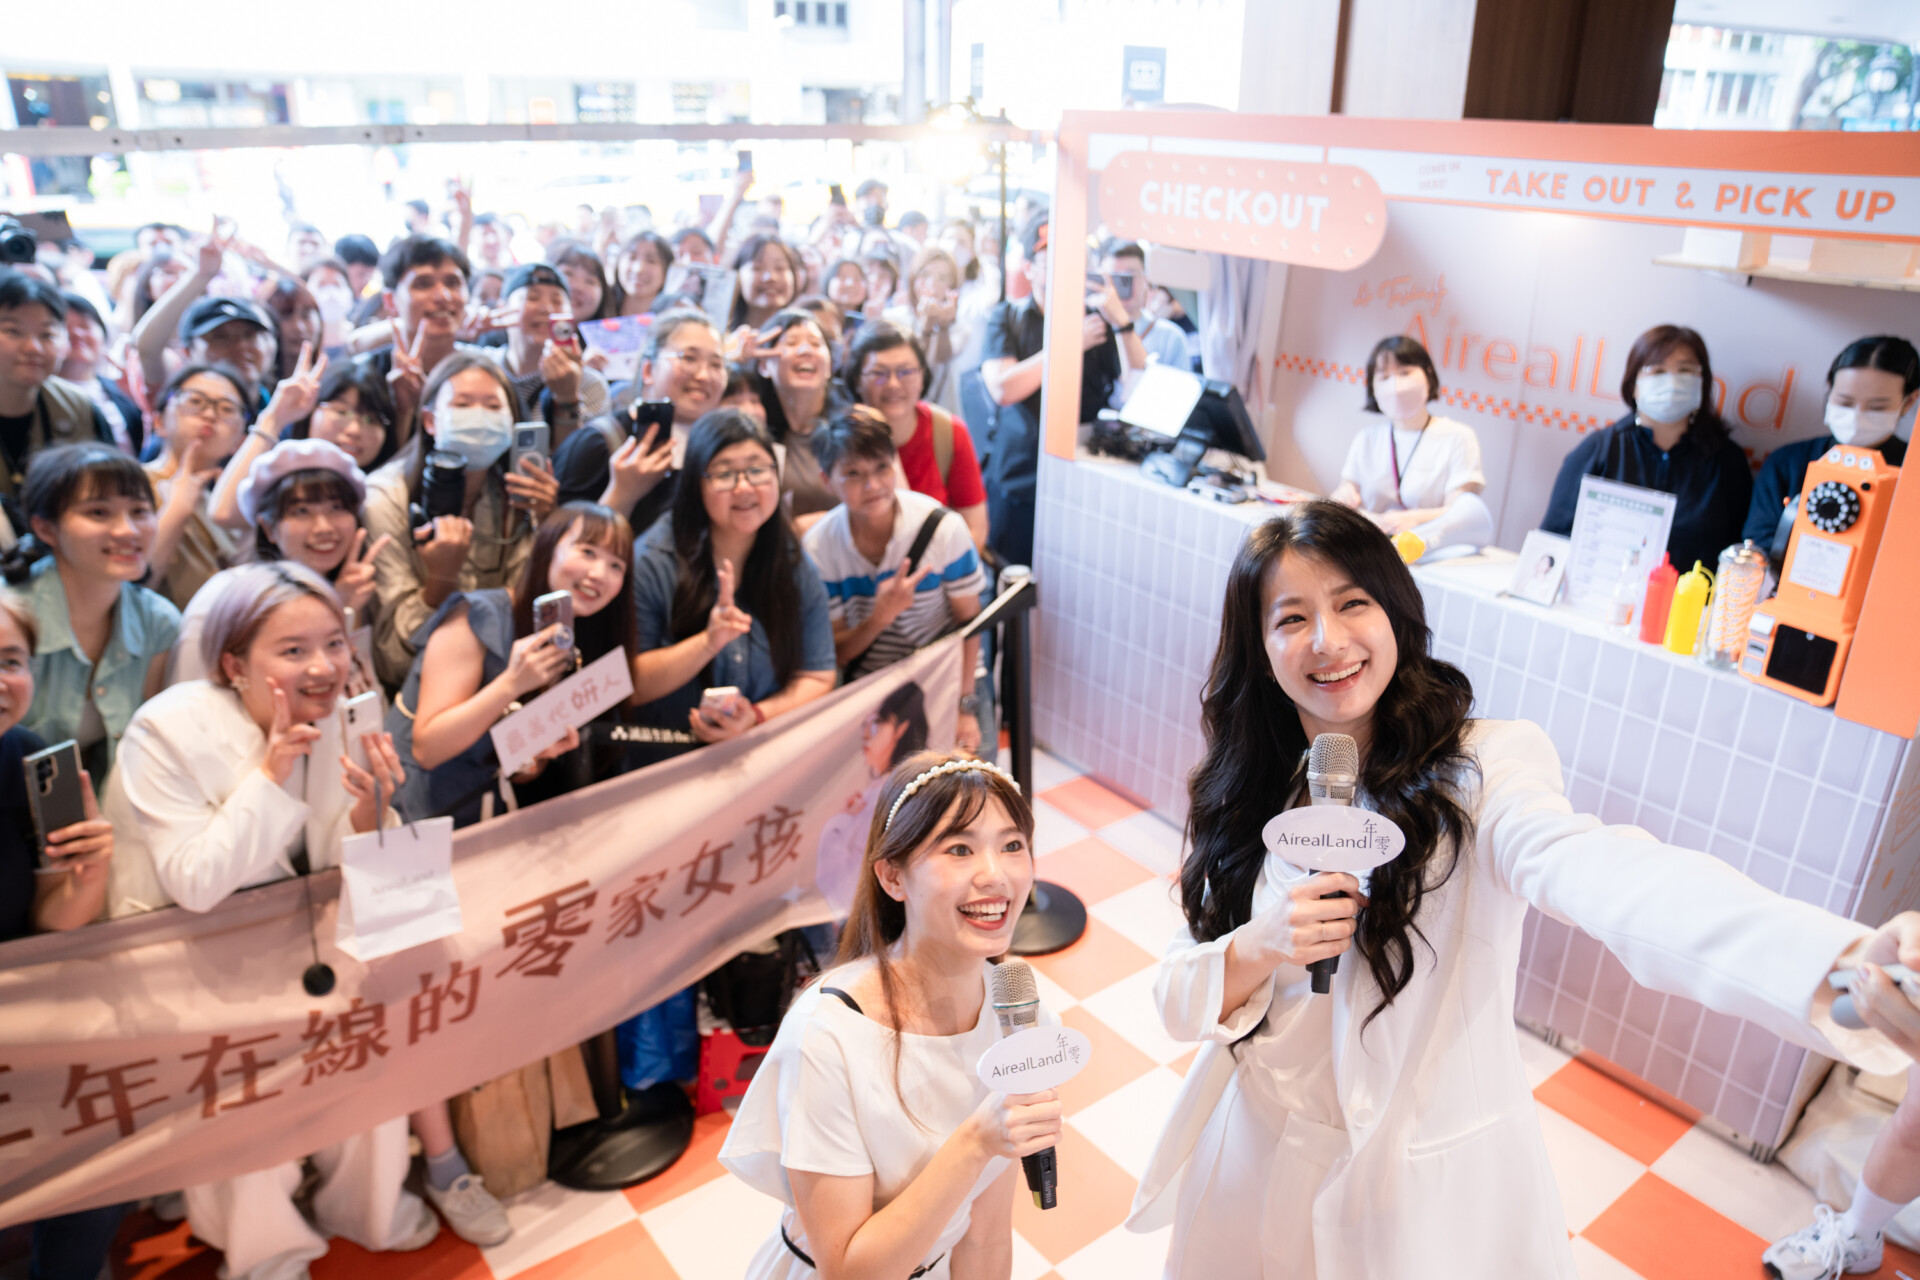 賴雅妍驚艷登場擔任保養品牌「年零AirealLand」一日店長，吸引百名粉絲熱情參與